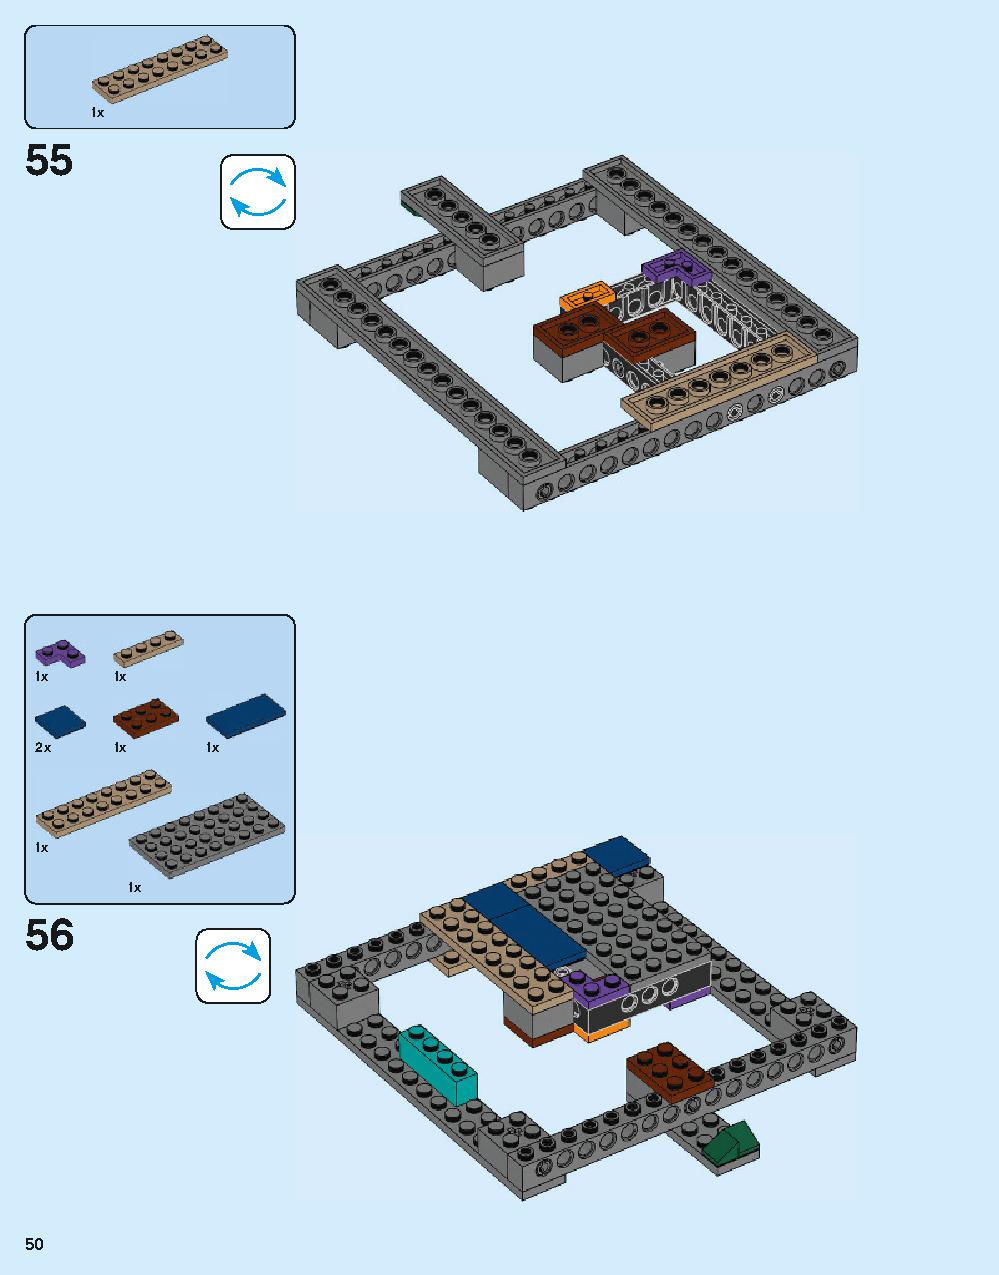 ホグワーツ城 71043 レゴの商品情報 レゴの説明書・組立方法 50 page